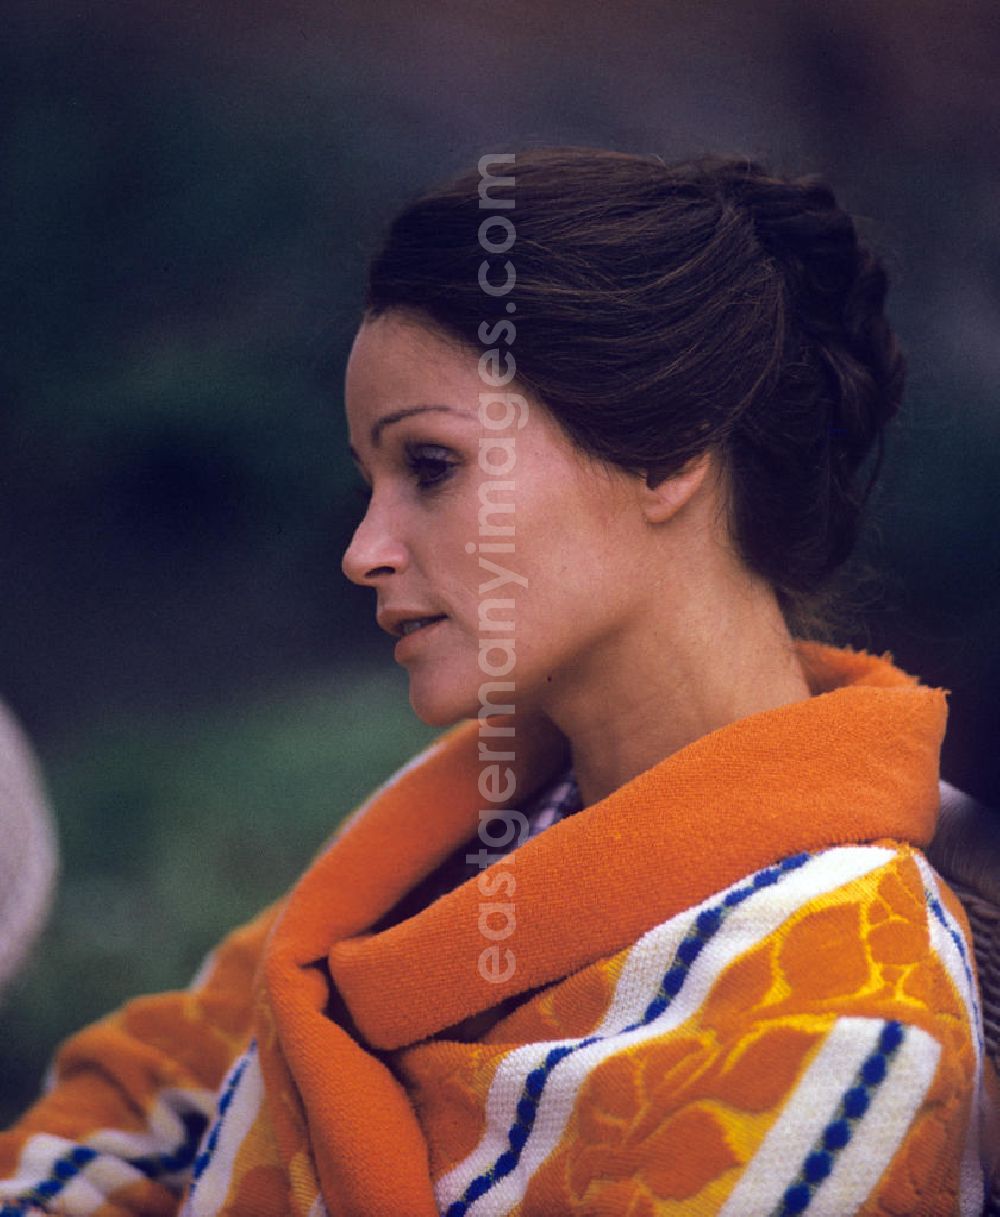 GDR picture archive: Berlin - Porträtaufnahme der Schauspielerin Angelica Domröse, aufgenommen 1975 während einer Drehpause. Durch ihre Rolle in Heiner Carows Kultfilm Die Legende von Paul und Paula wurde sie zu einer der bekanntesten Schauspielerinnen der DDR.